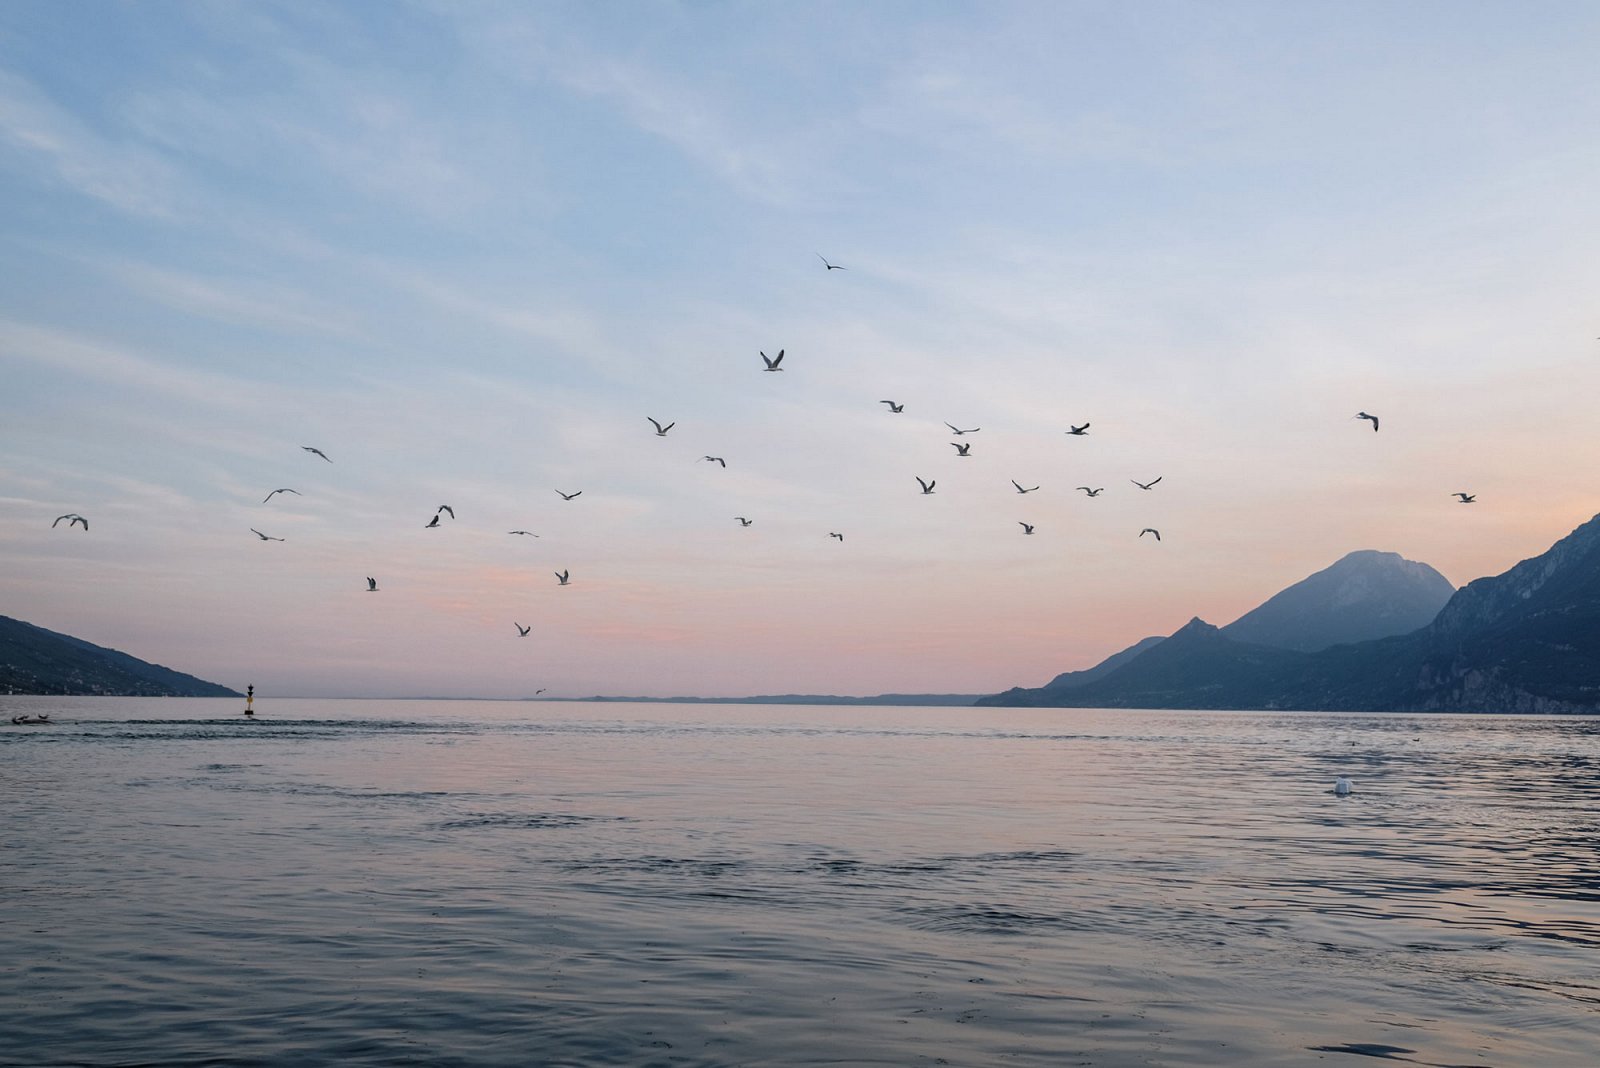 Rosa Himmel und Vögel im Flug während eines Sonnenuntergangs am Gardasee